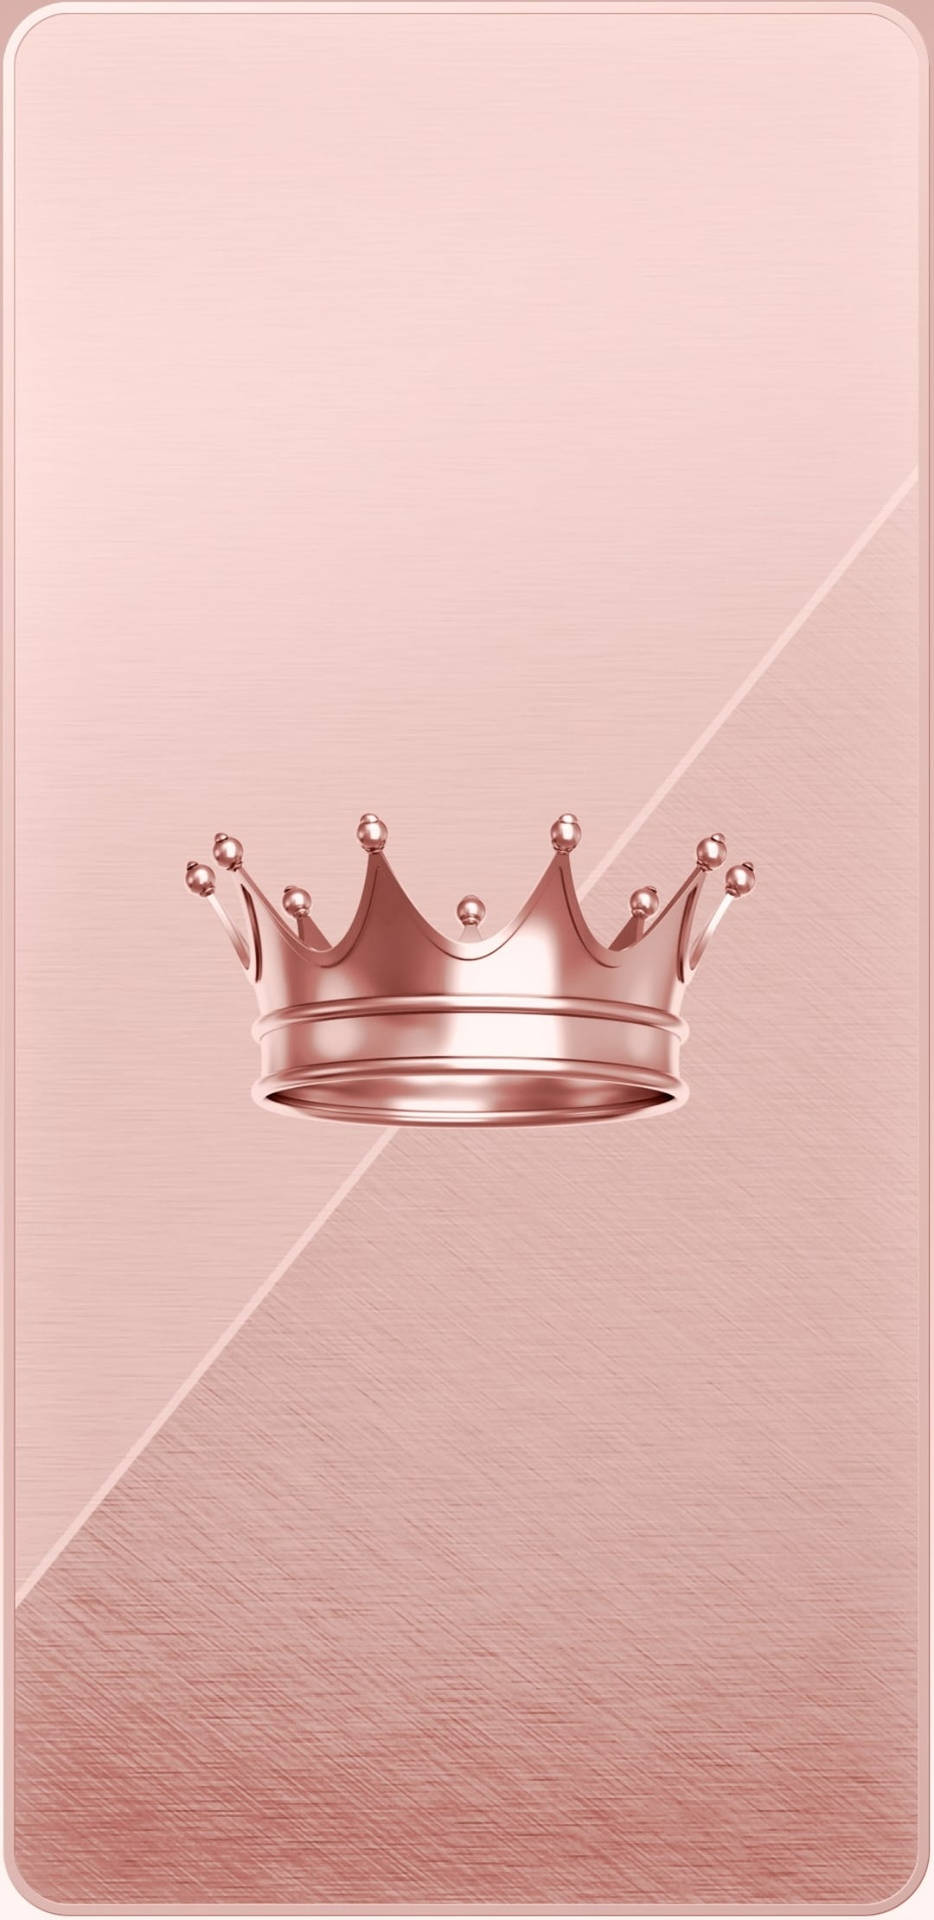 Đầu đất tại sao không? Với tấm hình nền mạ vàng hồng có hoa văn chiếc vương miện, bạn sẽ cảm thấy mình là một nữ hoàng thực sự. Lăn quay tấm hình nền của chúng tôi để có được trải nghiệm này!